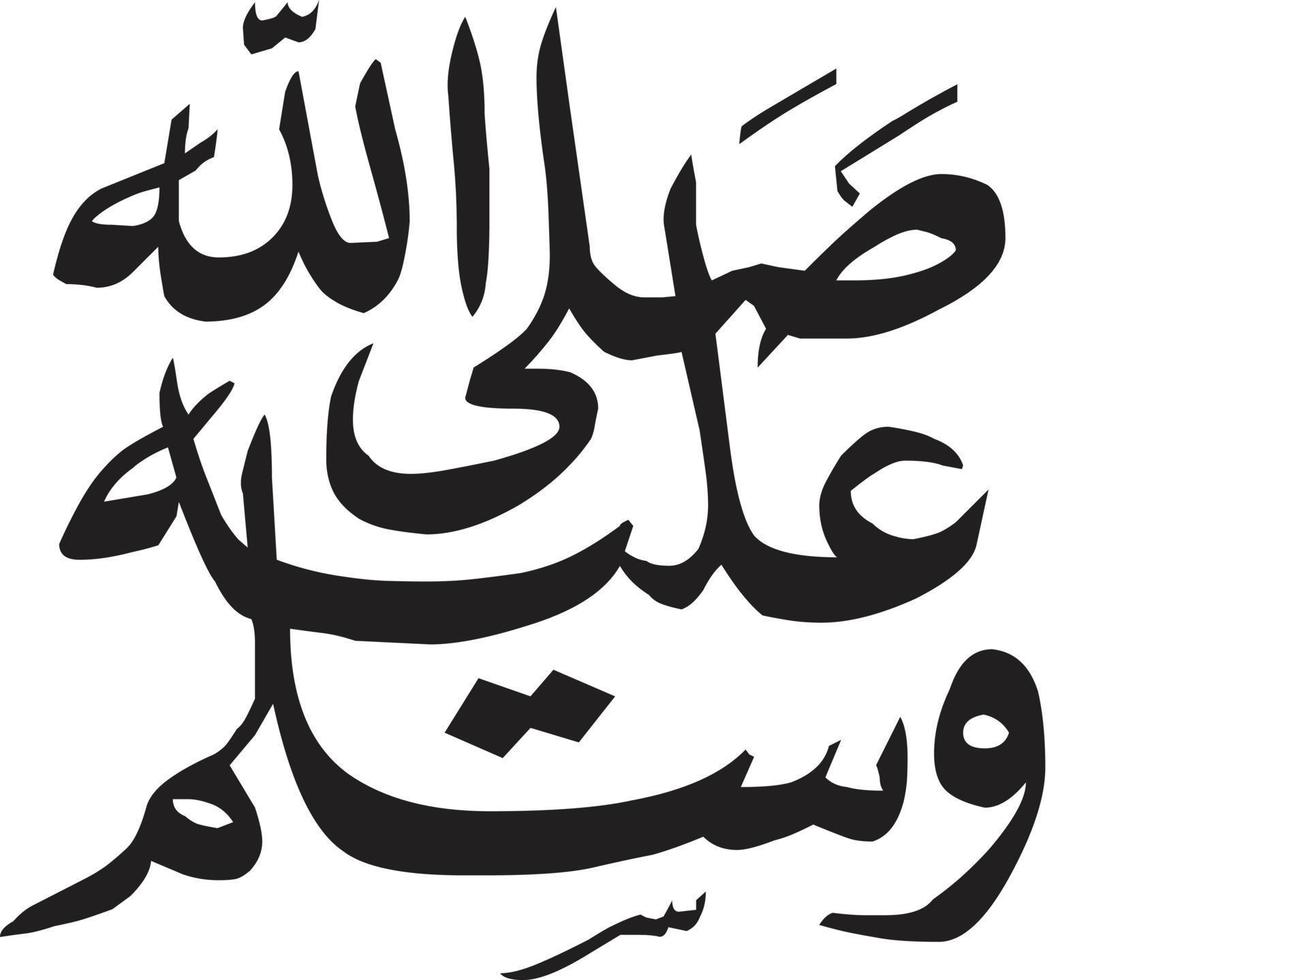 drood título islámico urdu árabe caligrafía vector libre